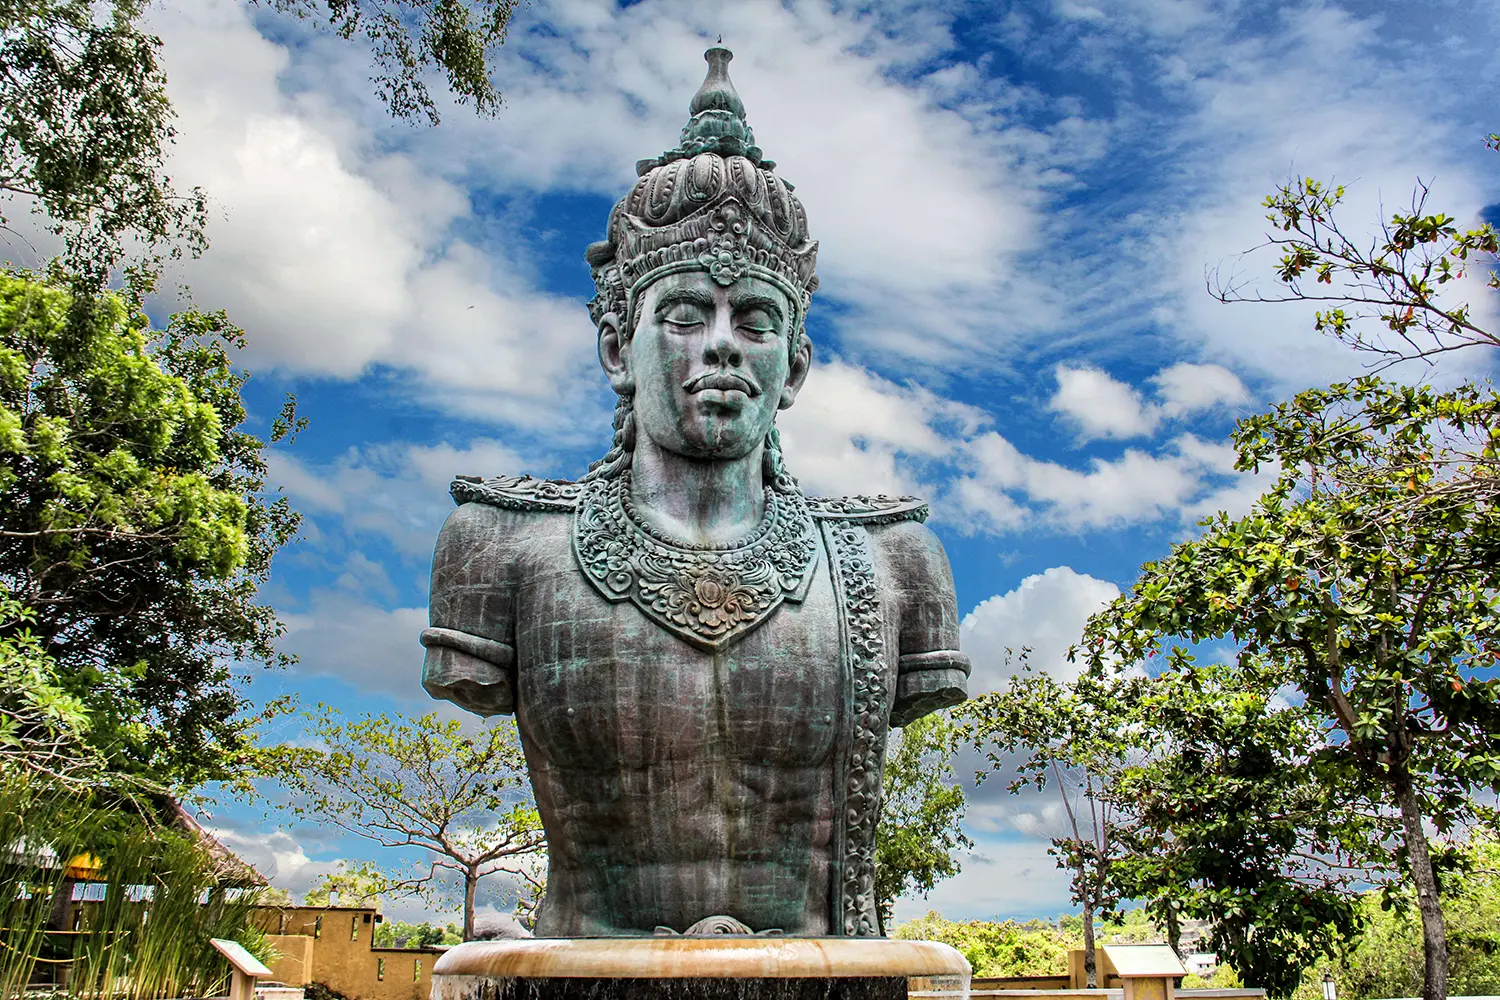 Gigantic statue at Garuda Wisnu Kencana in Bali